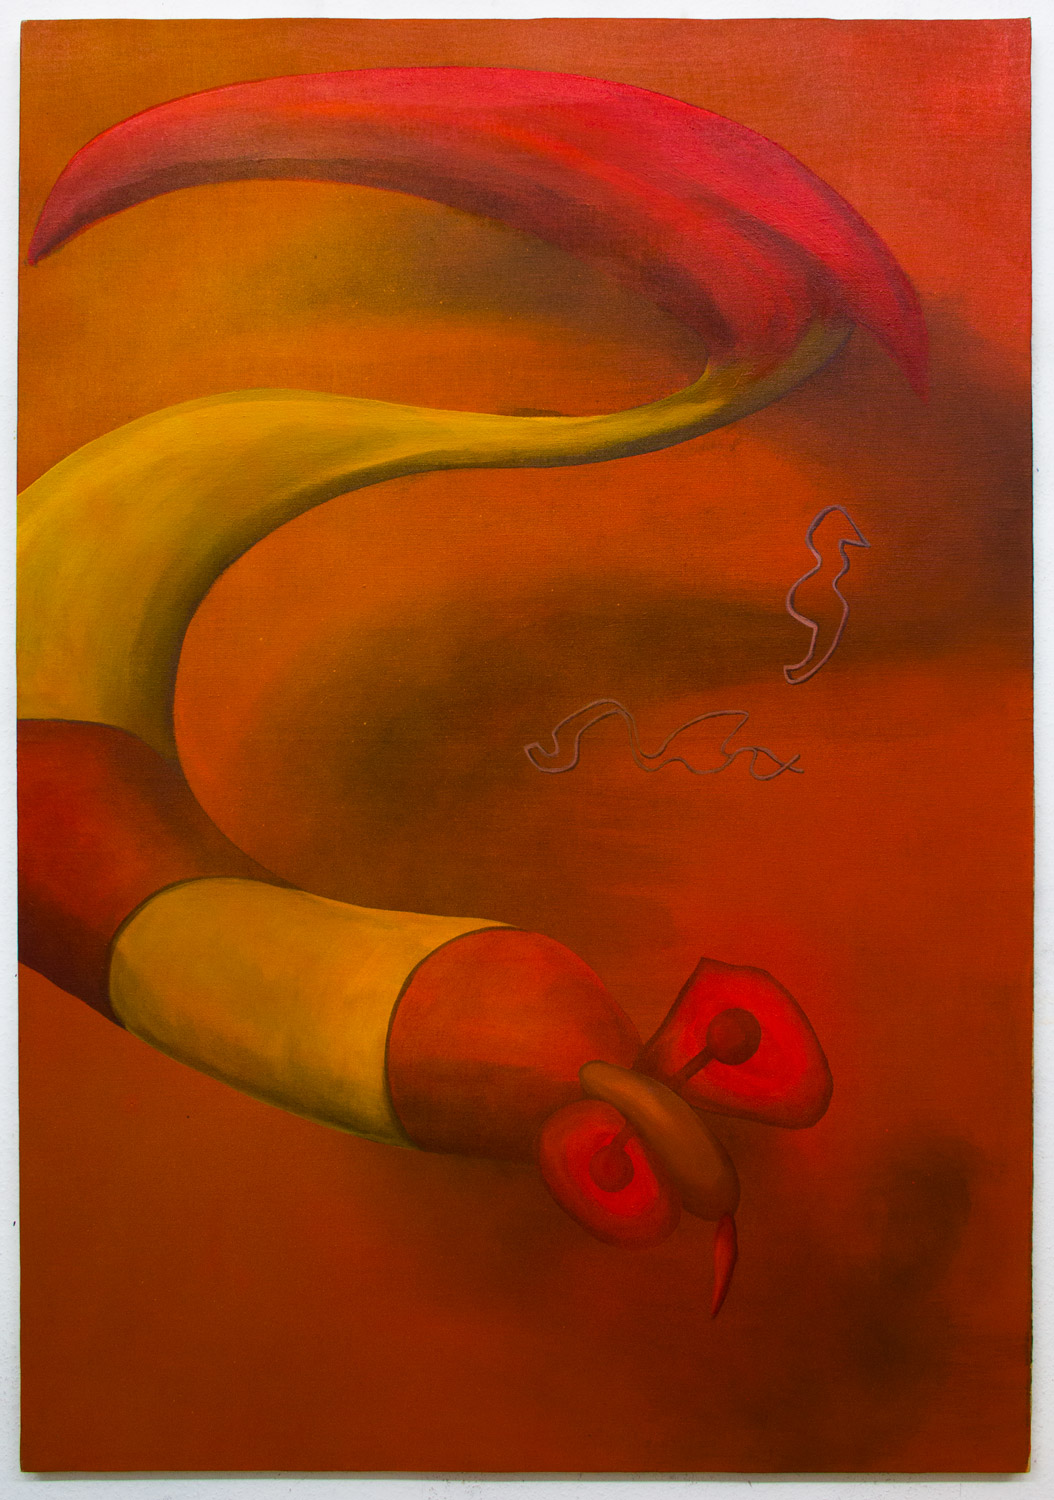 Cocoon; 90 x 130 cm; acrylics on canvas; 2017